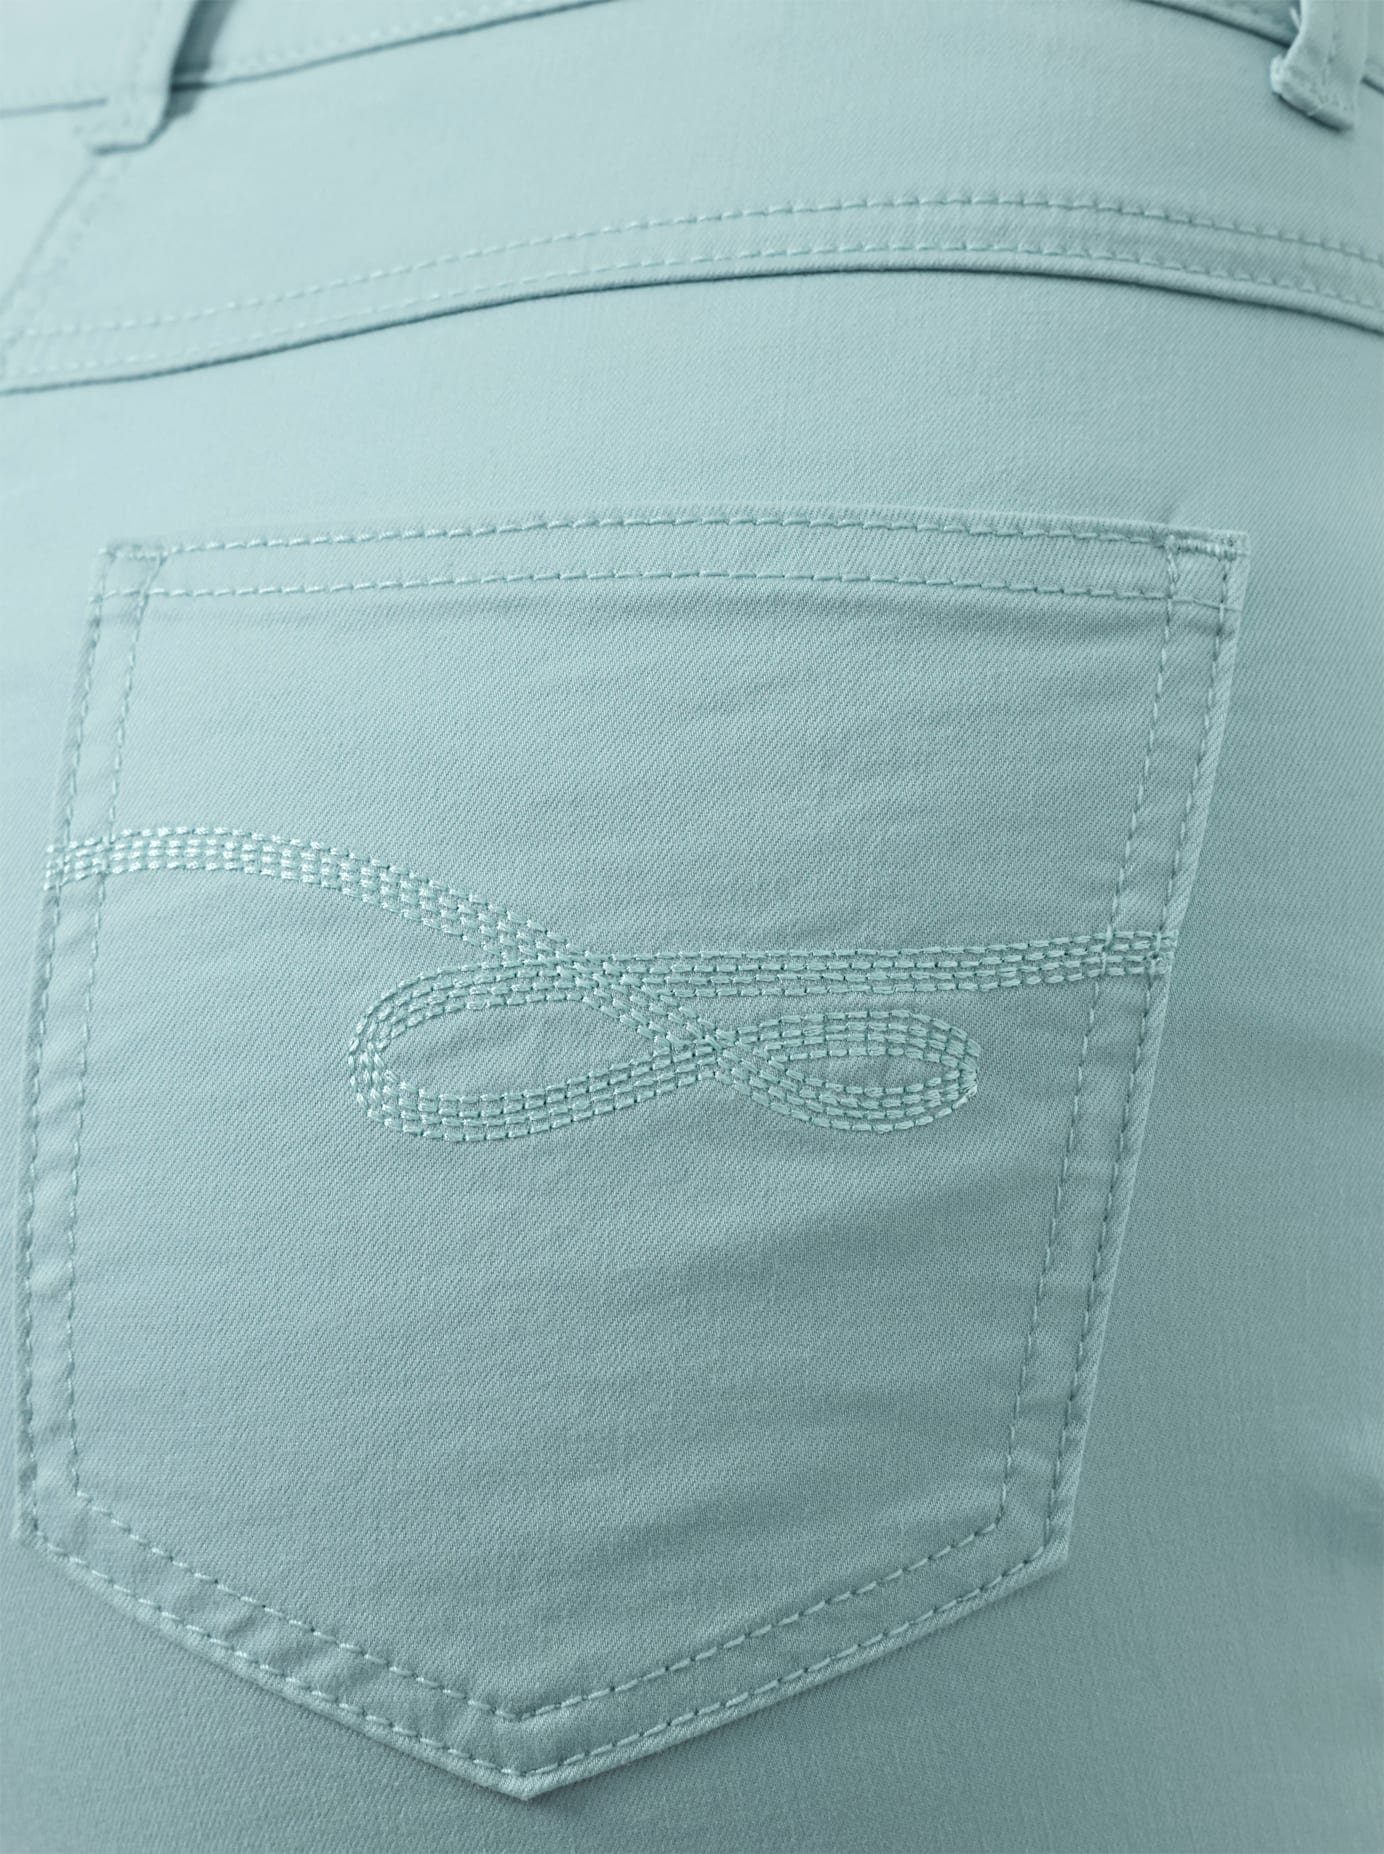 CREATION L PREMIUM 5-pocket jeans